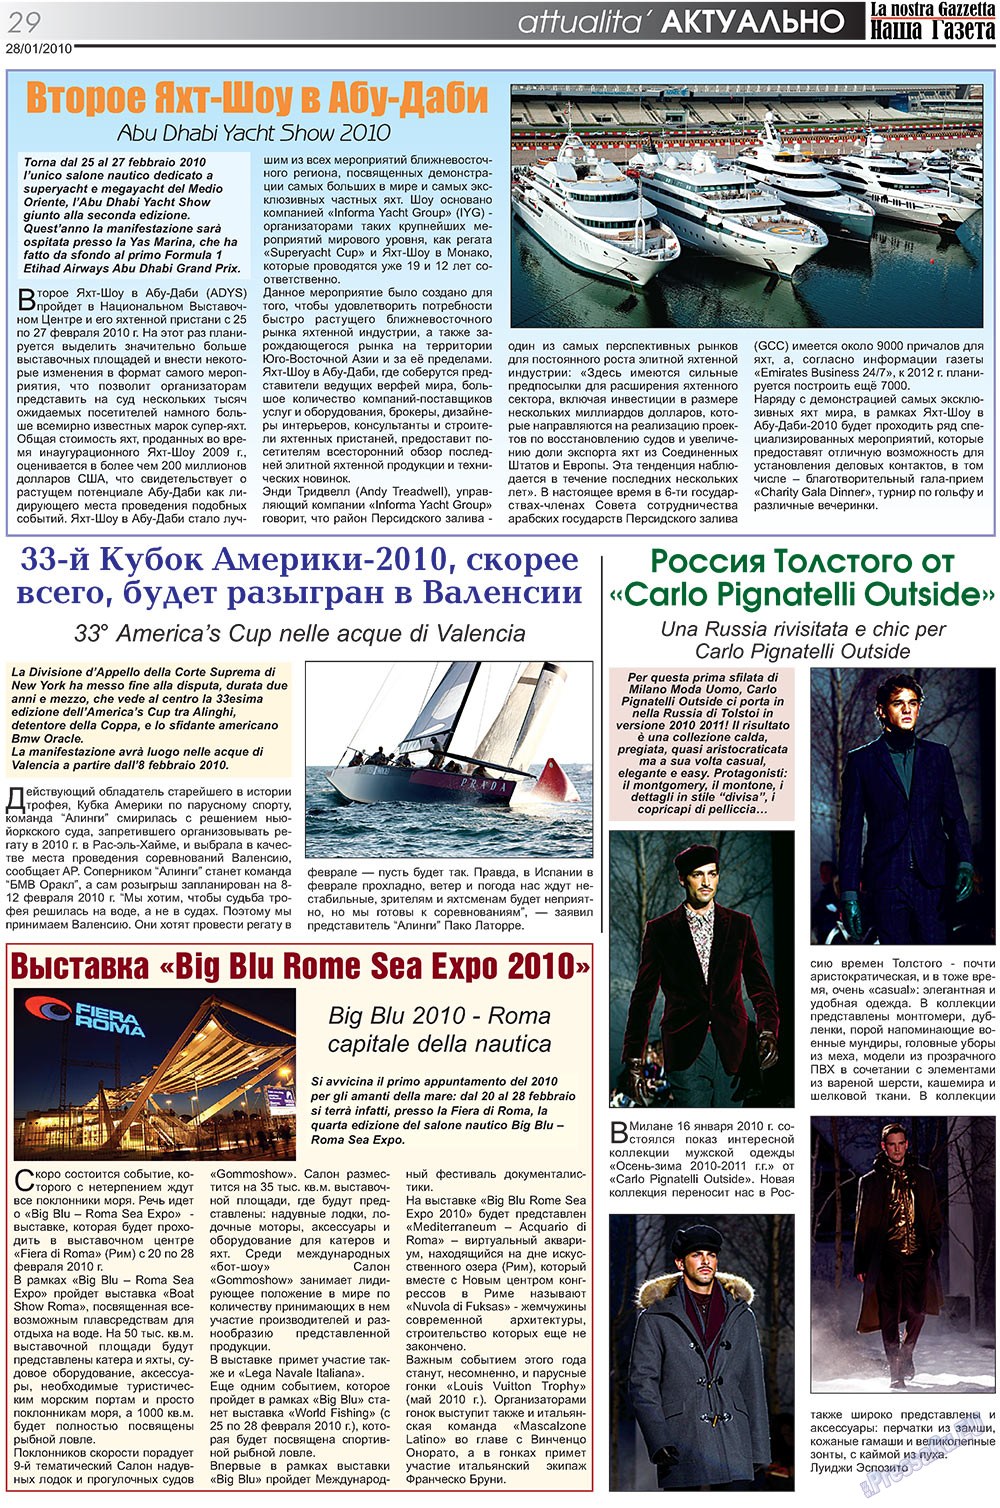 Наша Газета Италия, газета. 2010 №101 стр.29